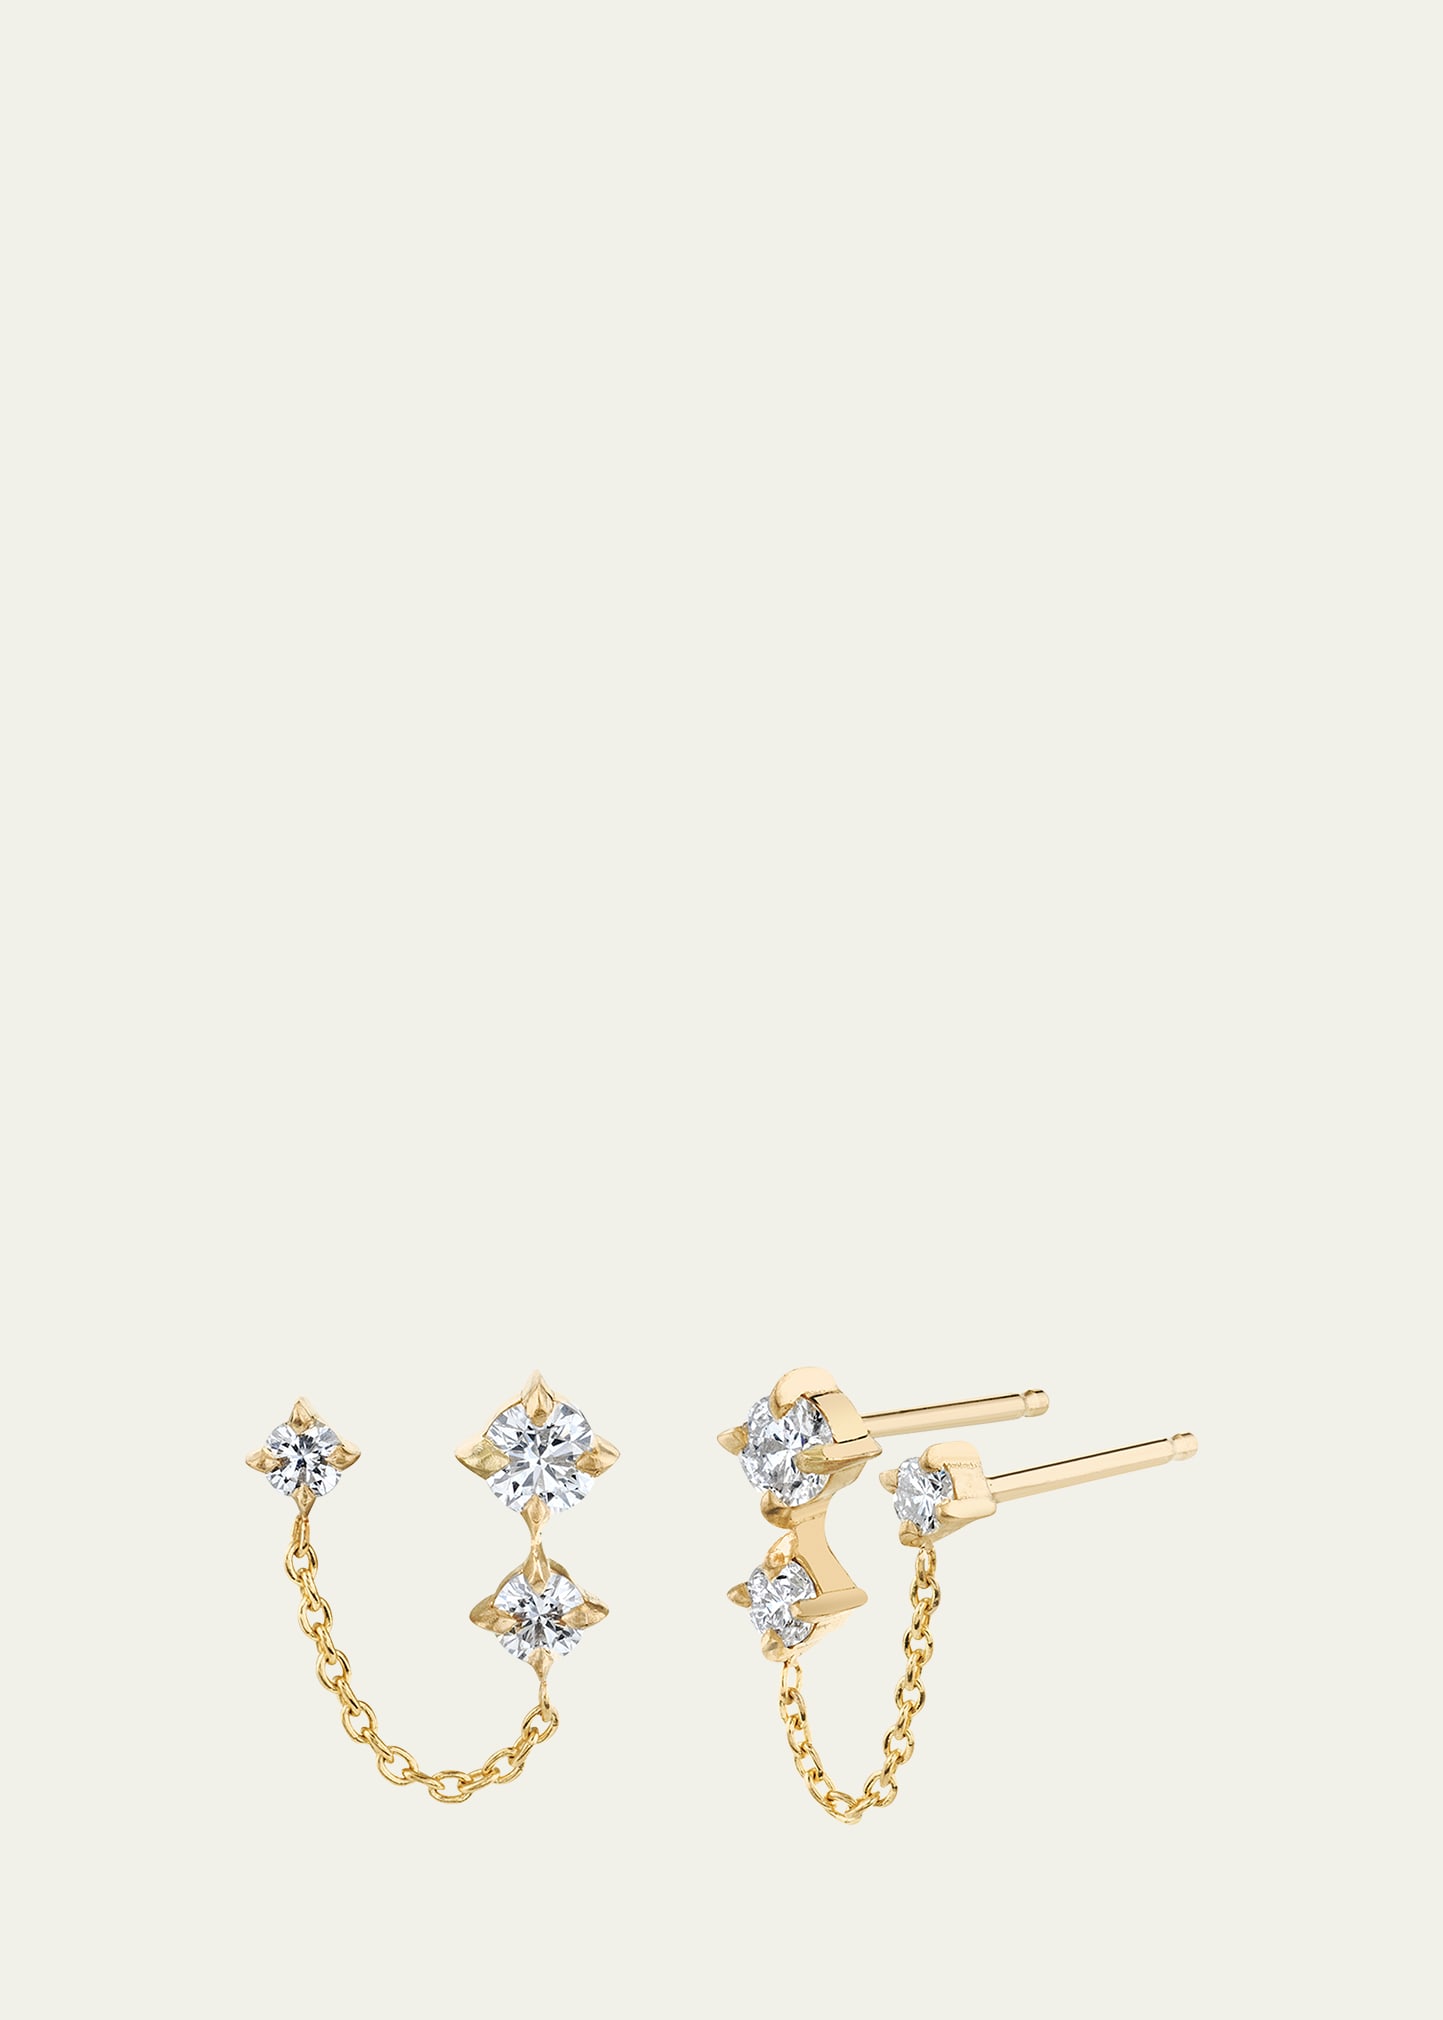 Lizzie Mandler Fine Jewelry Wave Double-Piercing 3 Diamond Stud Earring, Single